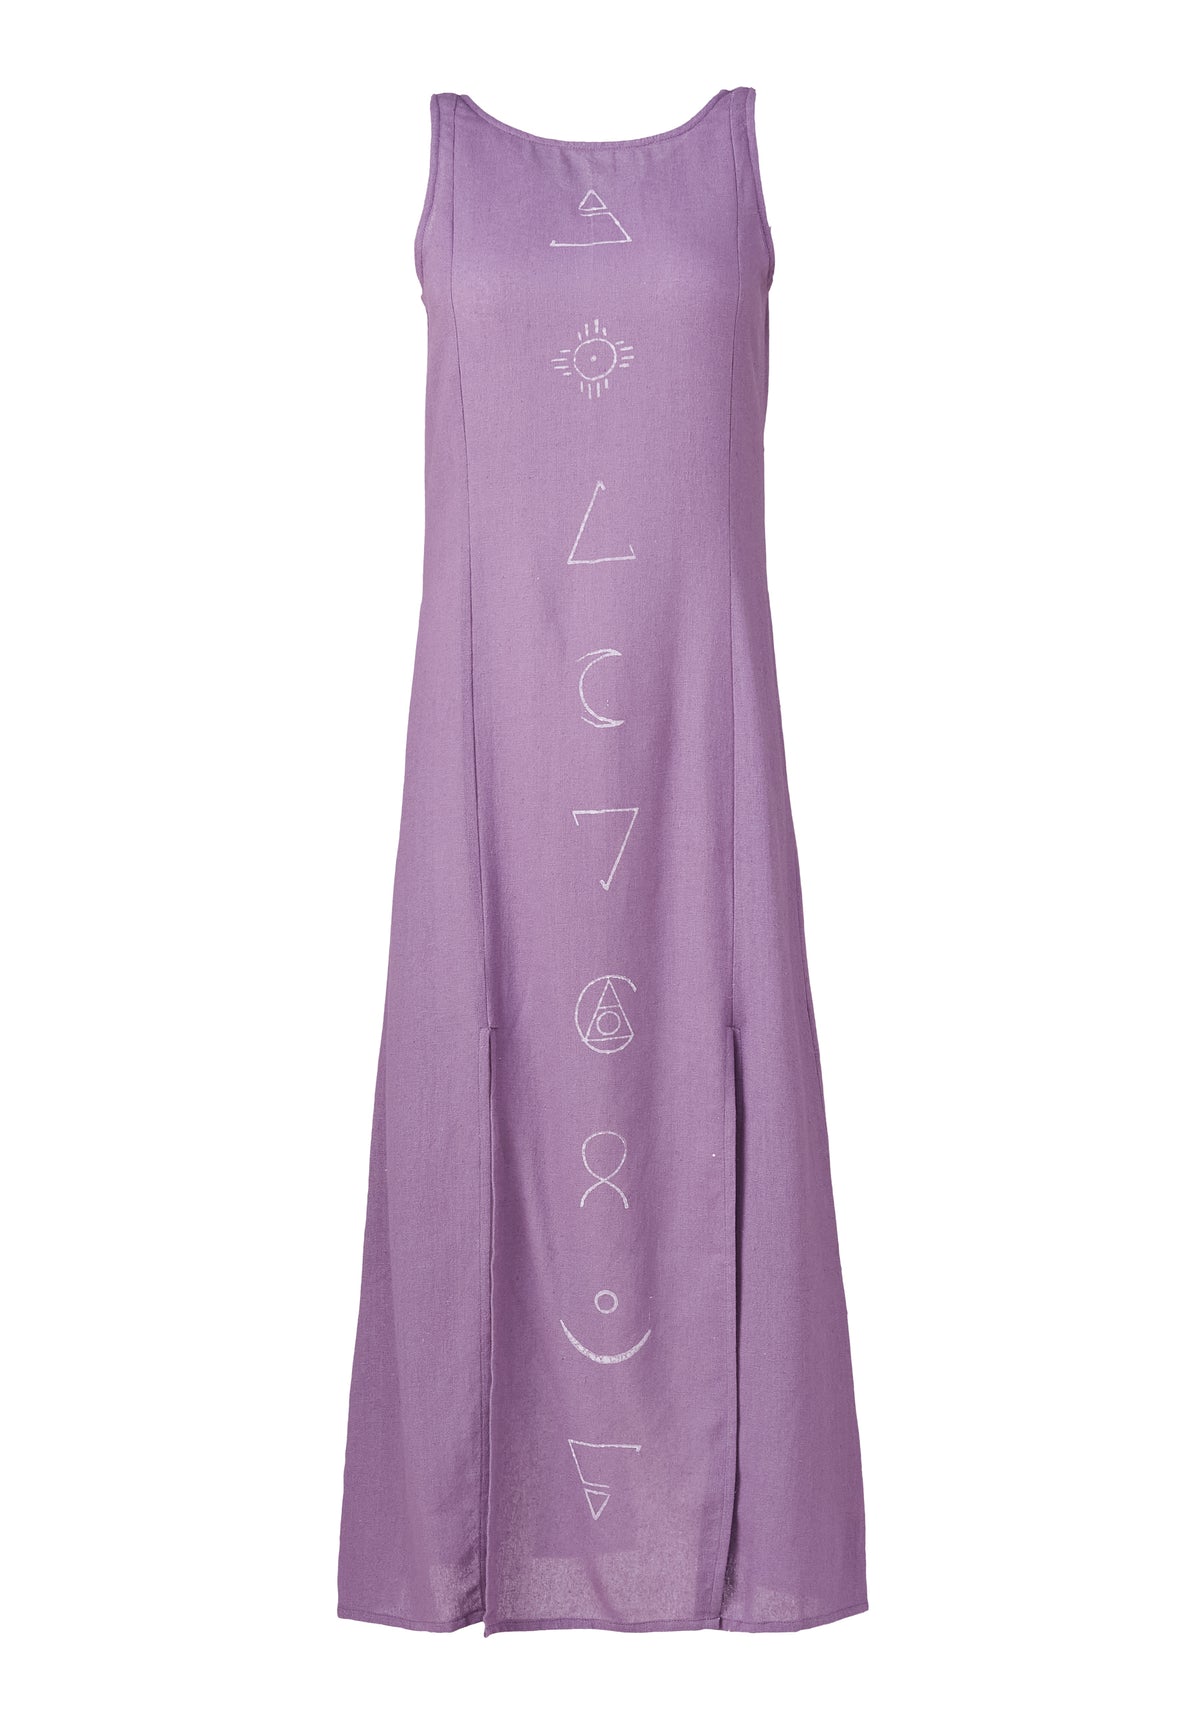 Elara Lavender Dress